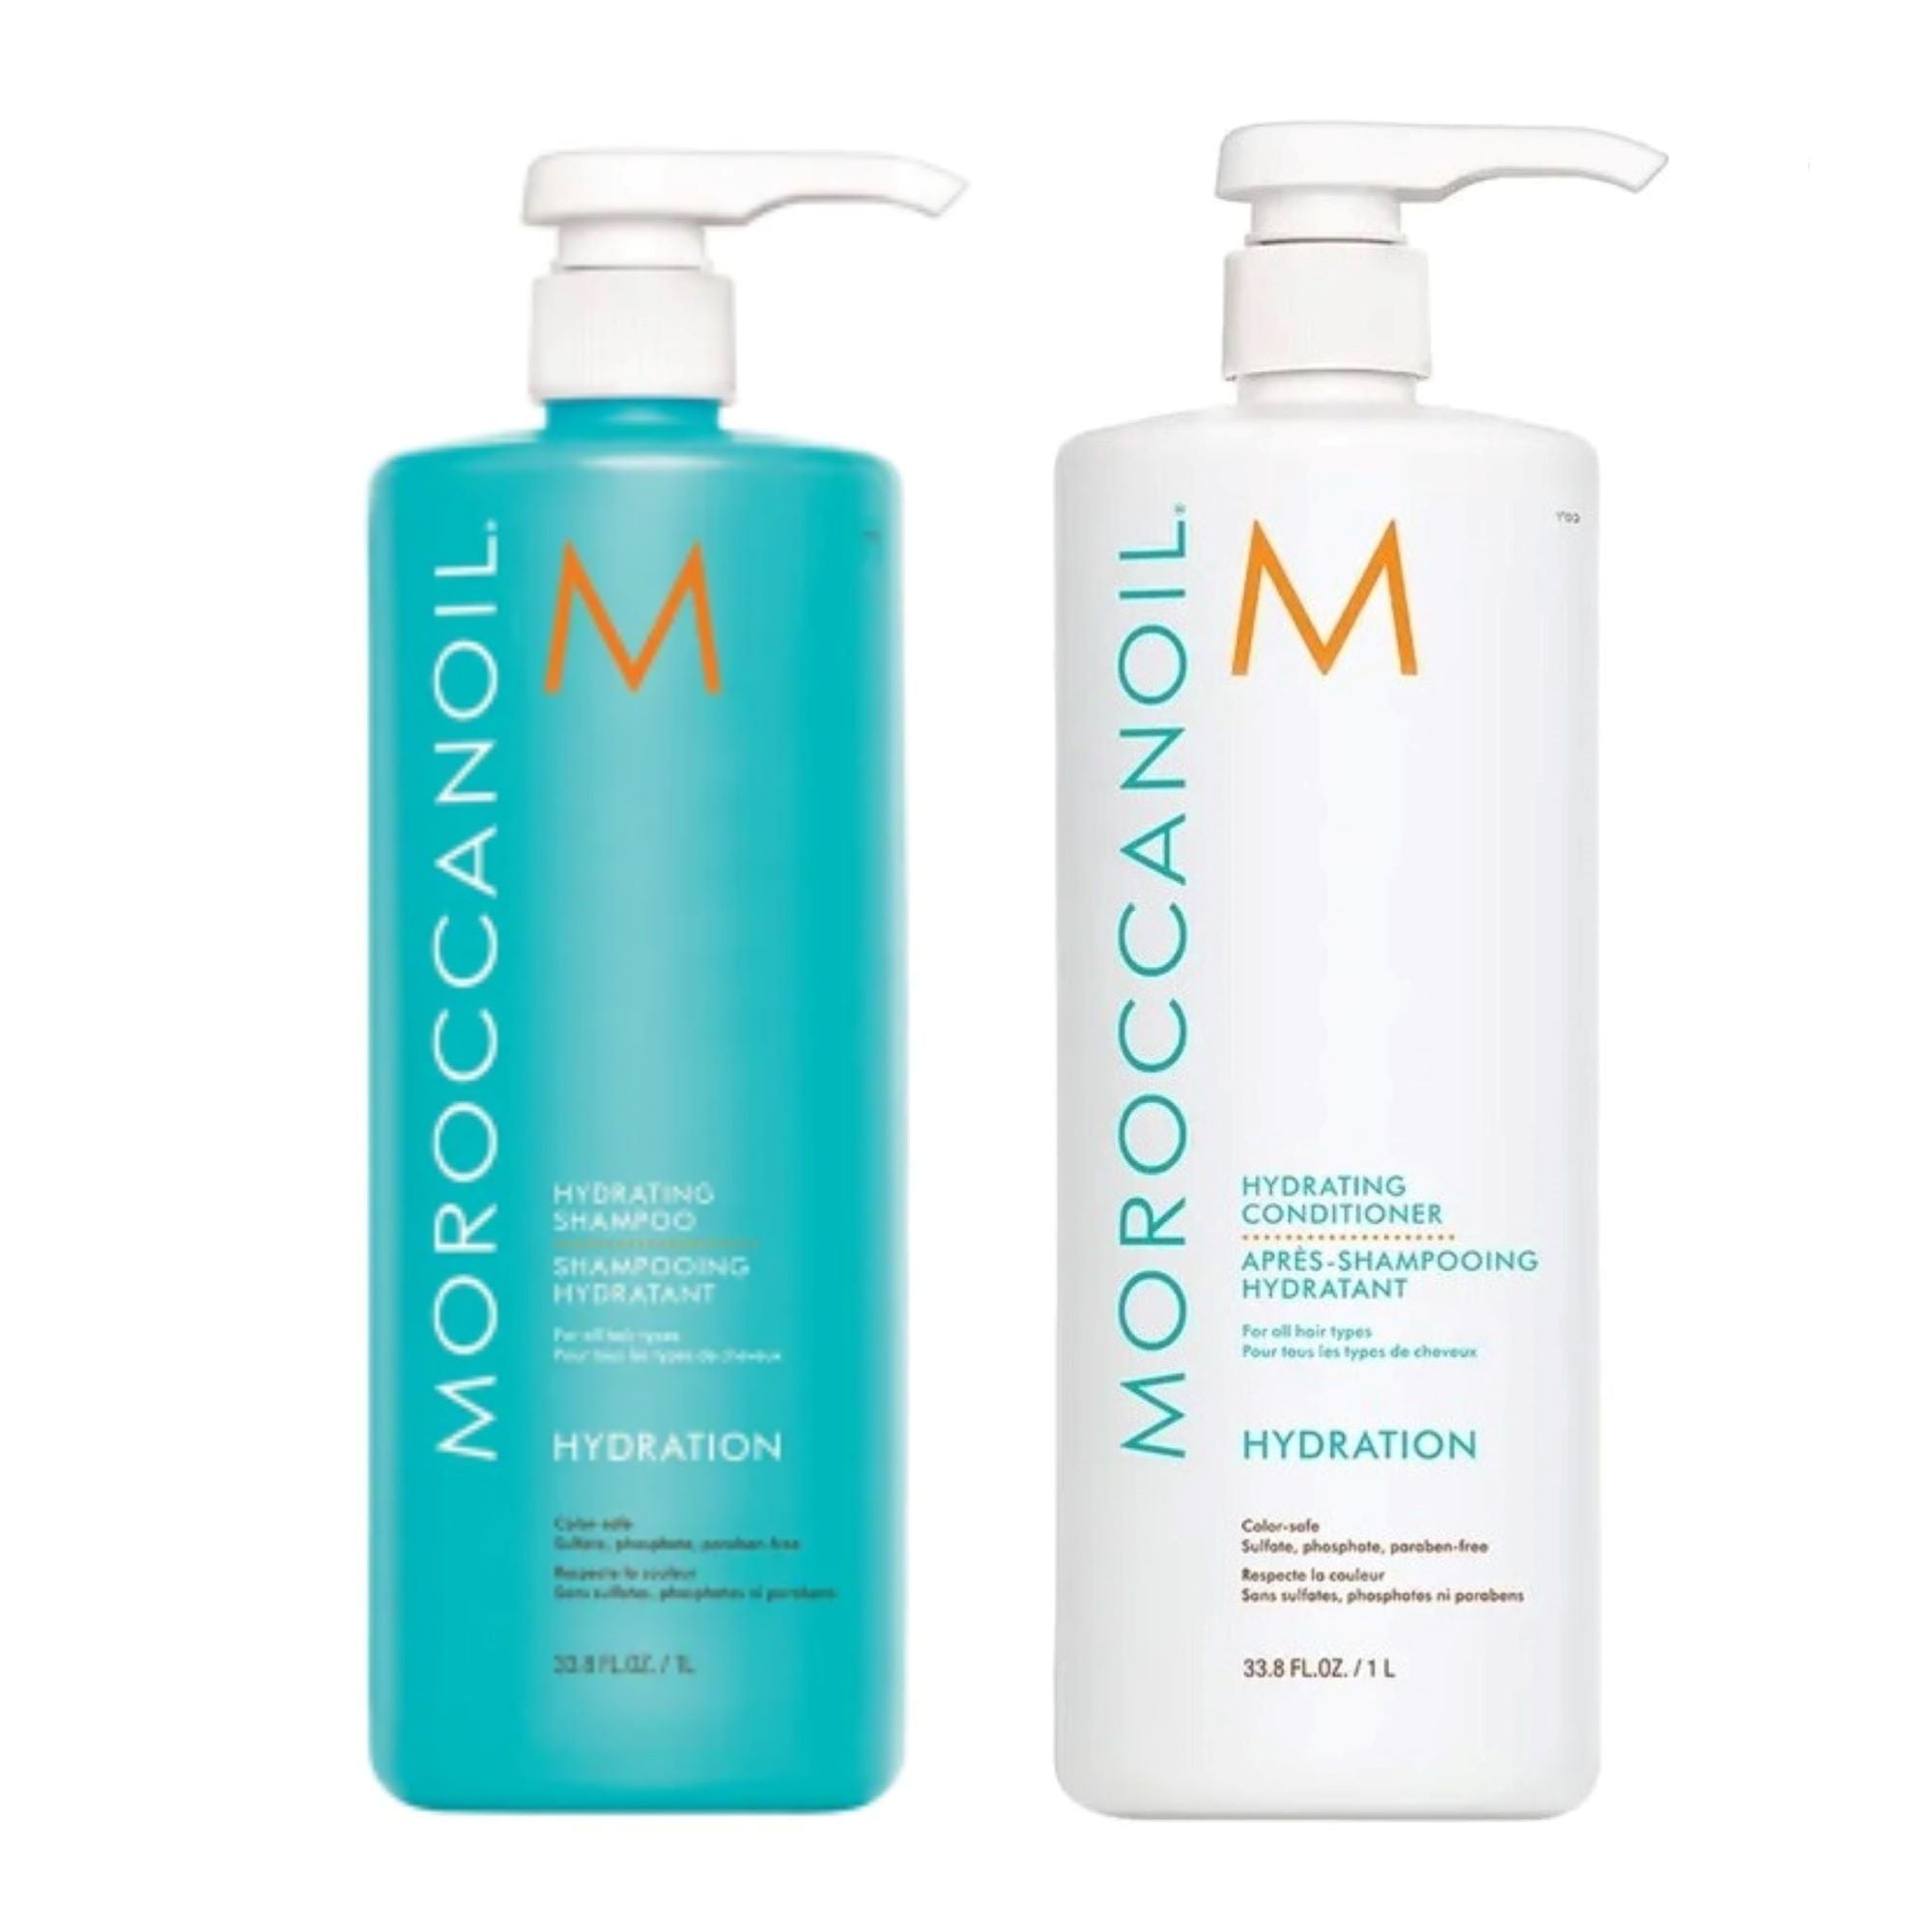 Moroccanoil Hydrate Shampoo & Conditioner Liter Duo ($150 VALUE) / 2x 33.8OZ